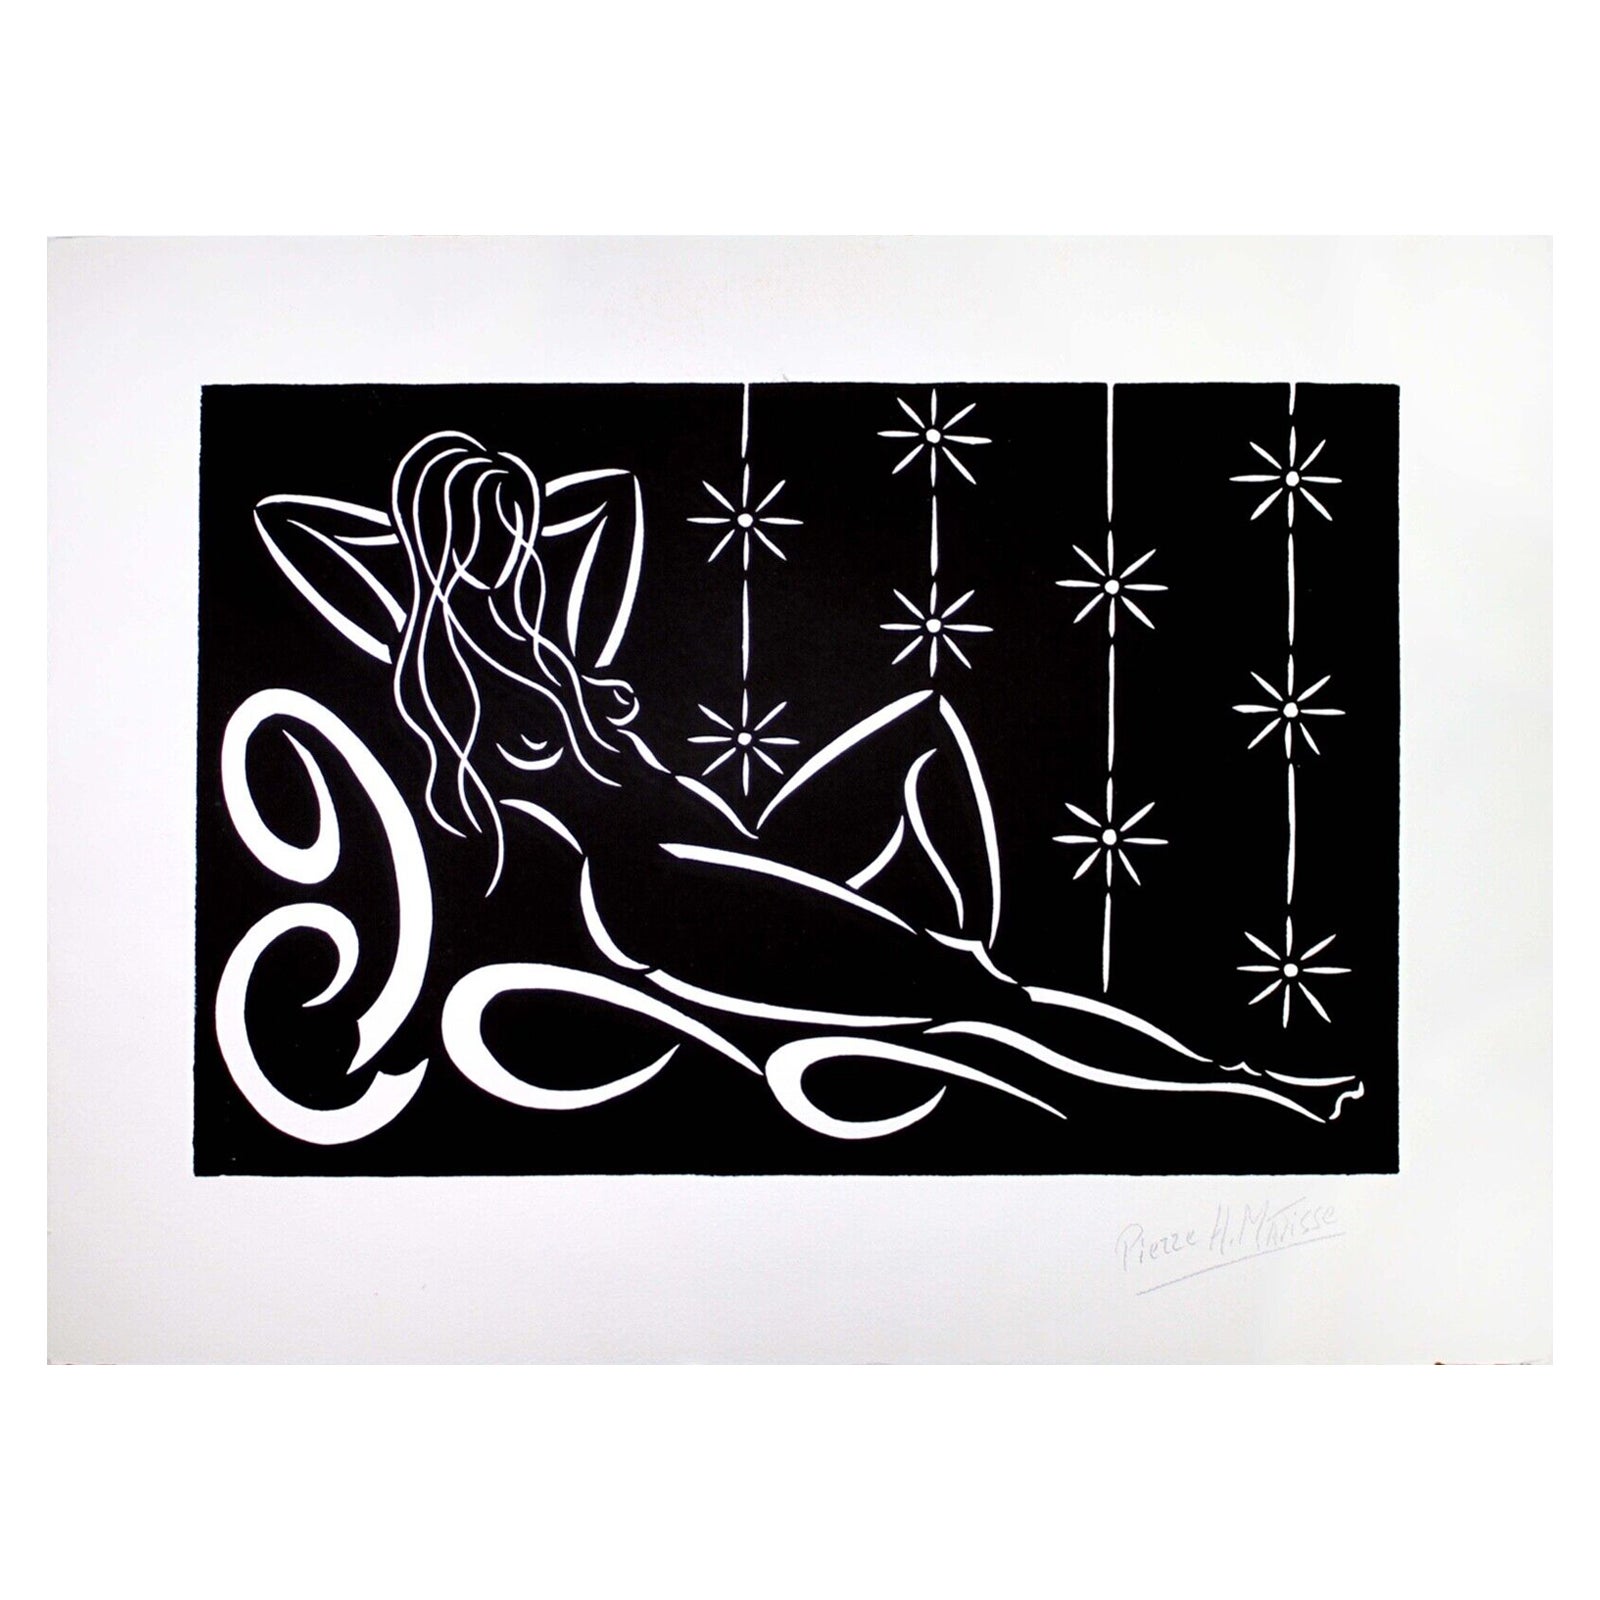 Pierre Henri Matisse, Liegesessel, Akt, signiert, modern, Linolschnitt auf Papier, ungerahmt, 2016